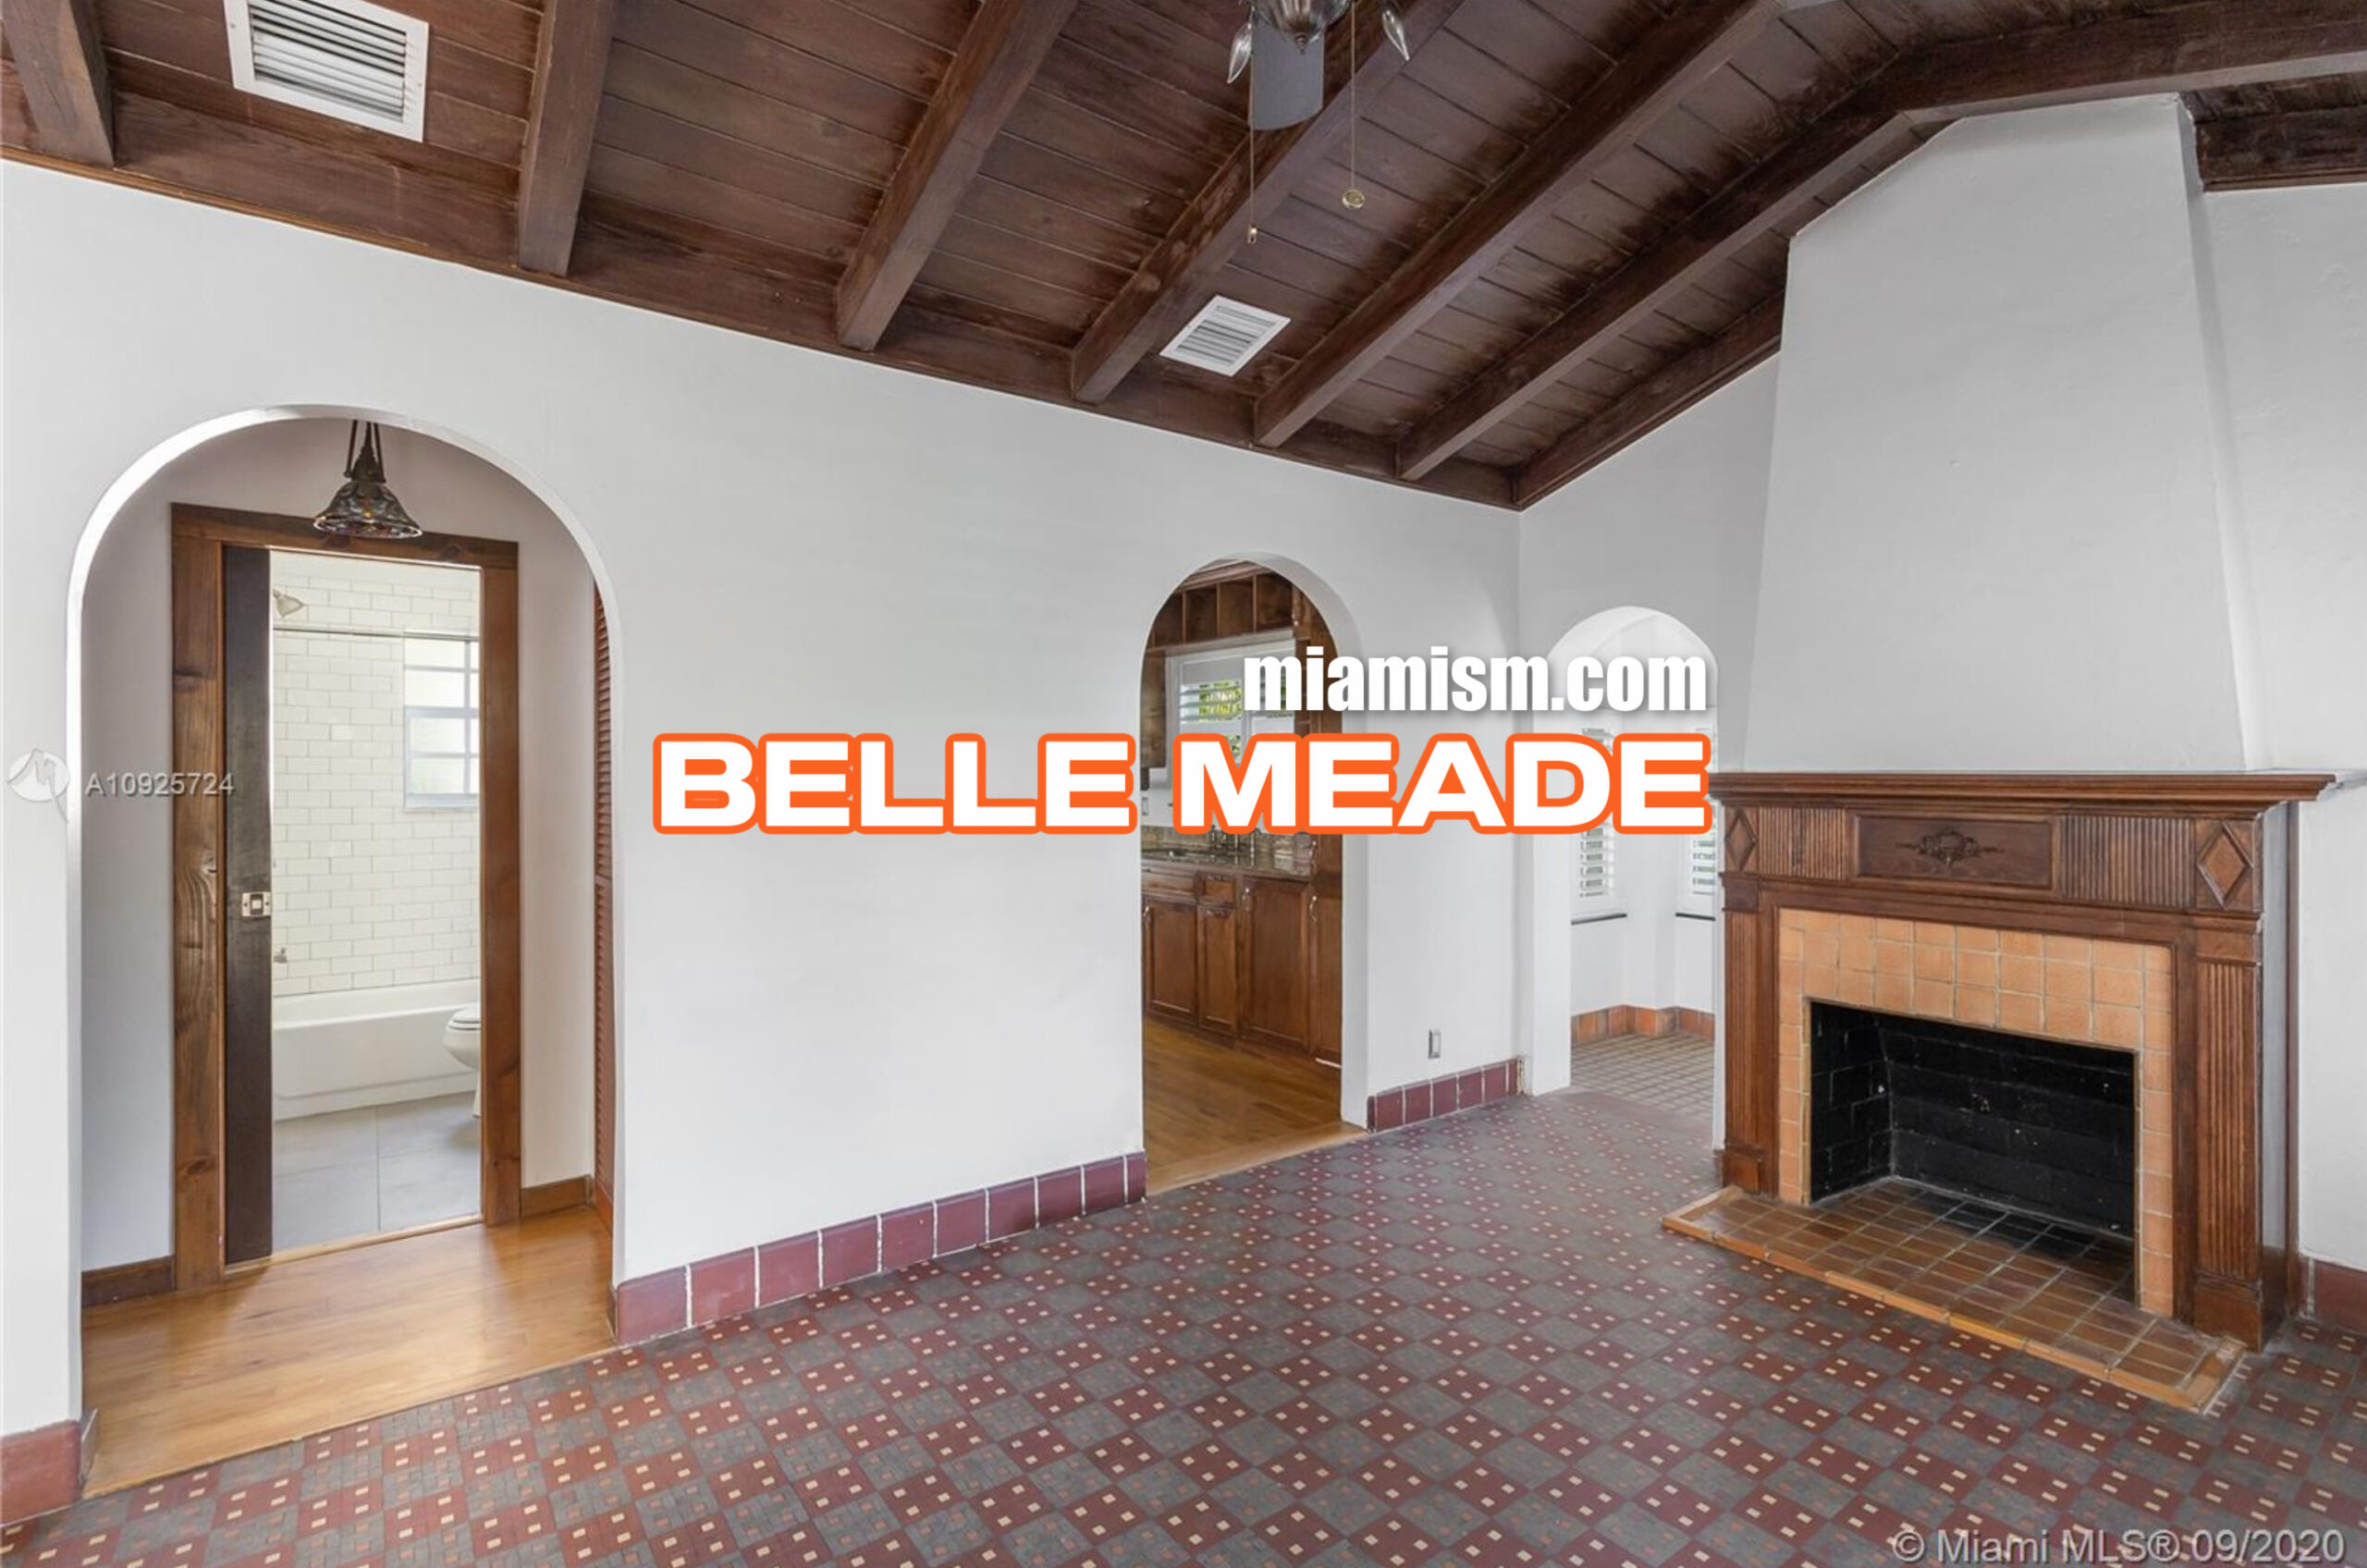 belle-meade-real-estate-market-report-november-2020